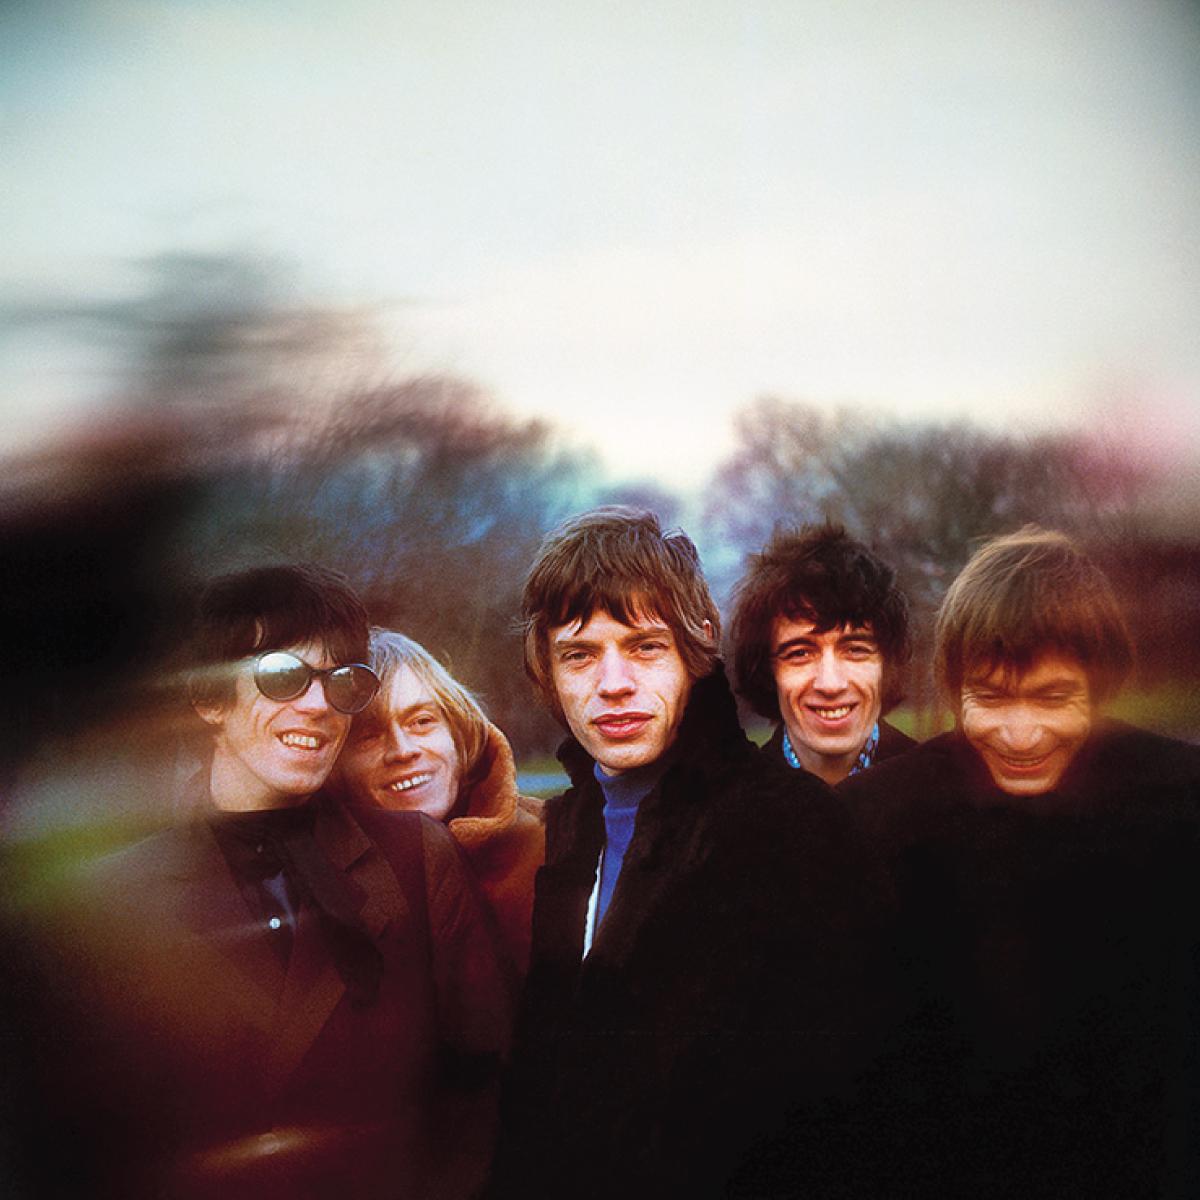 Les Rolling Stones, photographiés à Londres en 1965 par Gered Mankowitz. Avec Mick Jagger, Keith Richards, Charlie Watts, Brian Jones et Bill Wyman.

Cette image du groupe est une prise de la célèbre session Between The Buttons, réalisée fin 1966 à